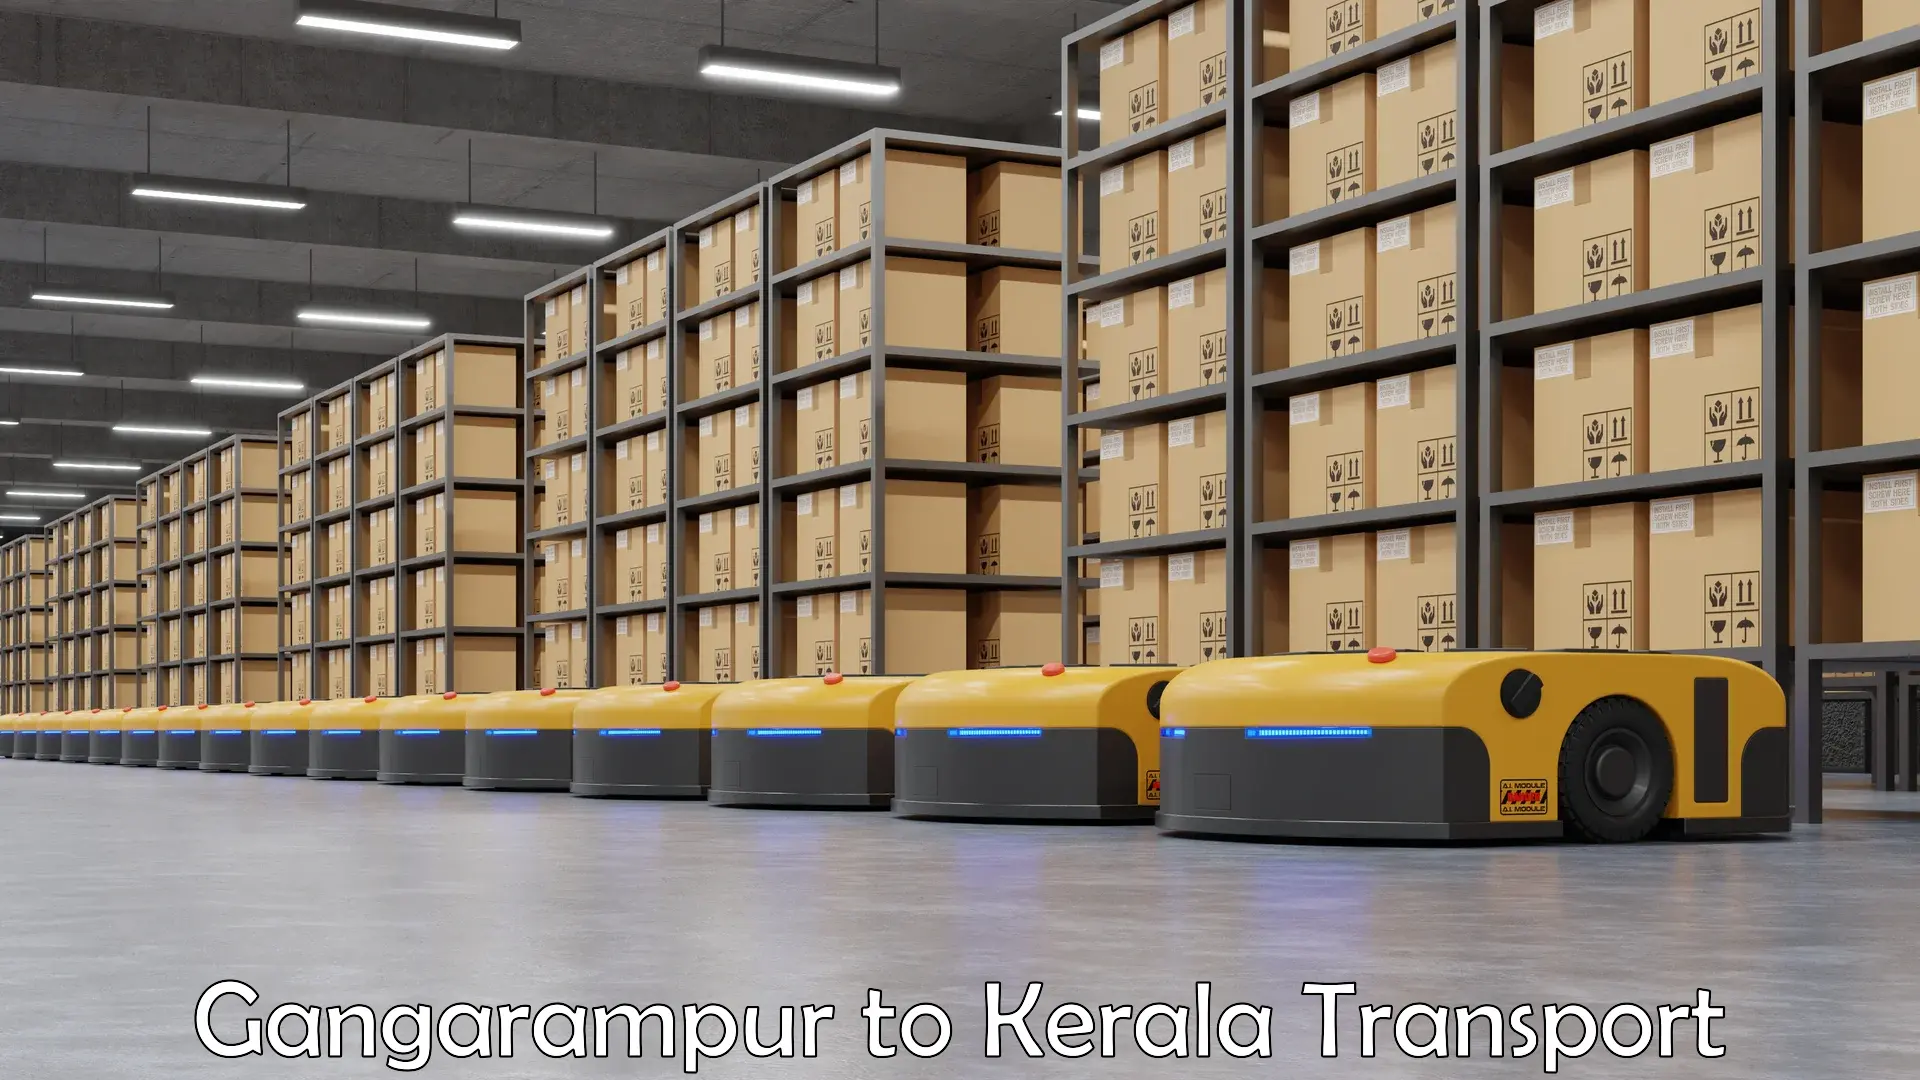 Online transport service Gangarampur to Kerala